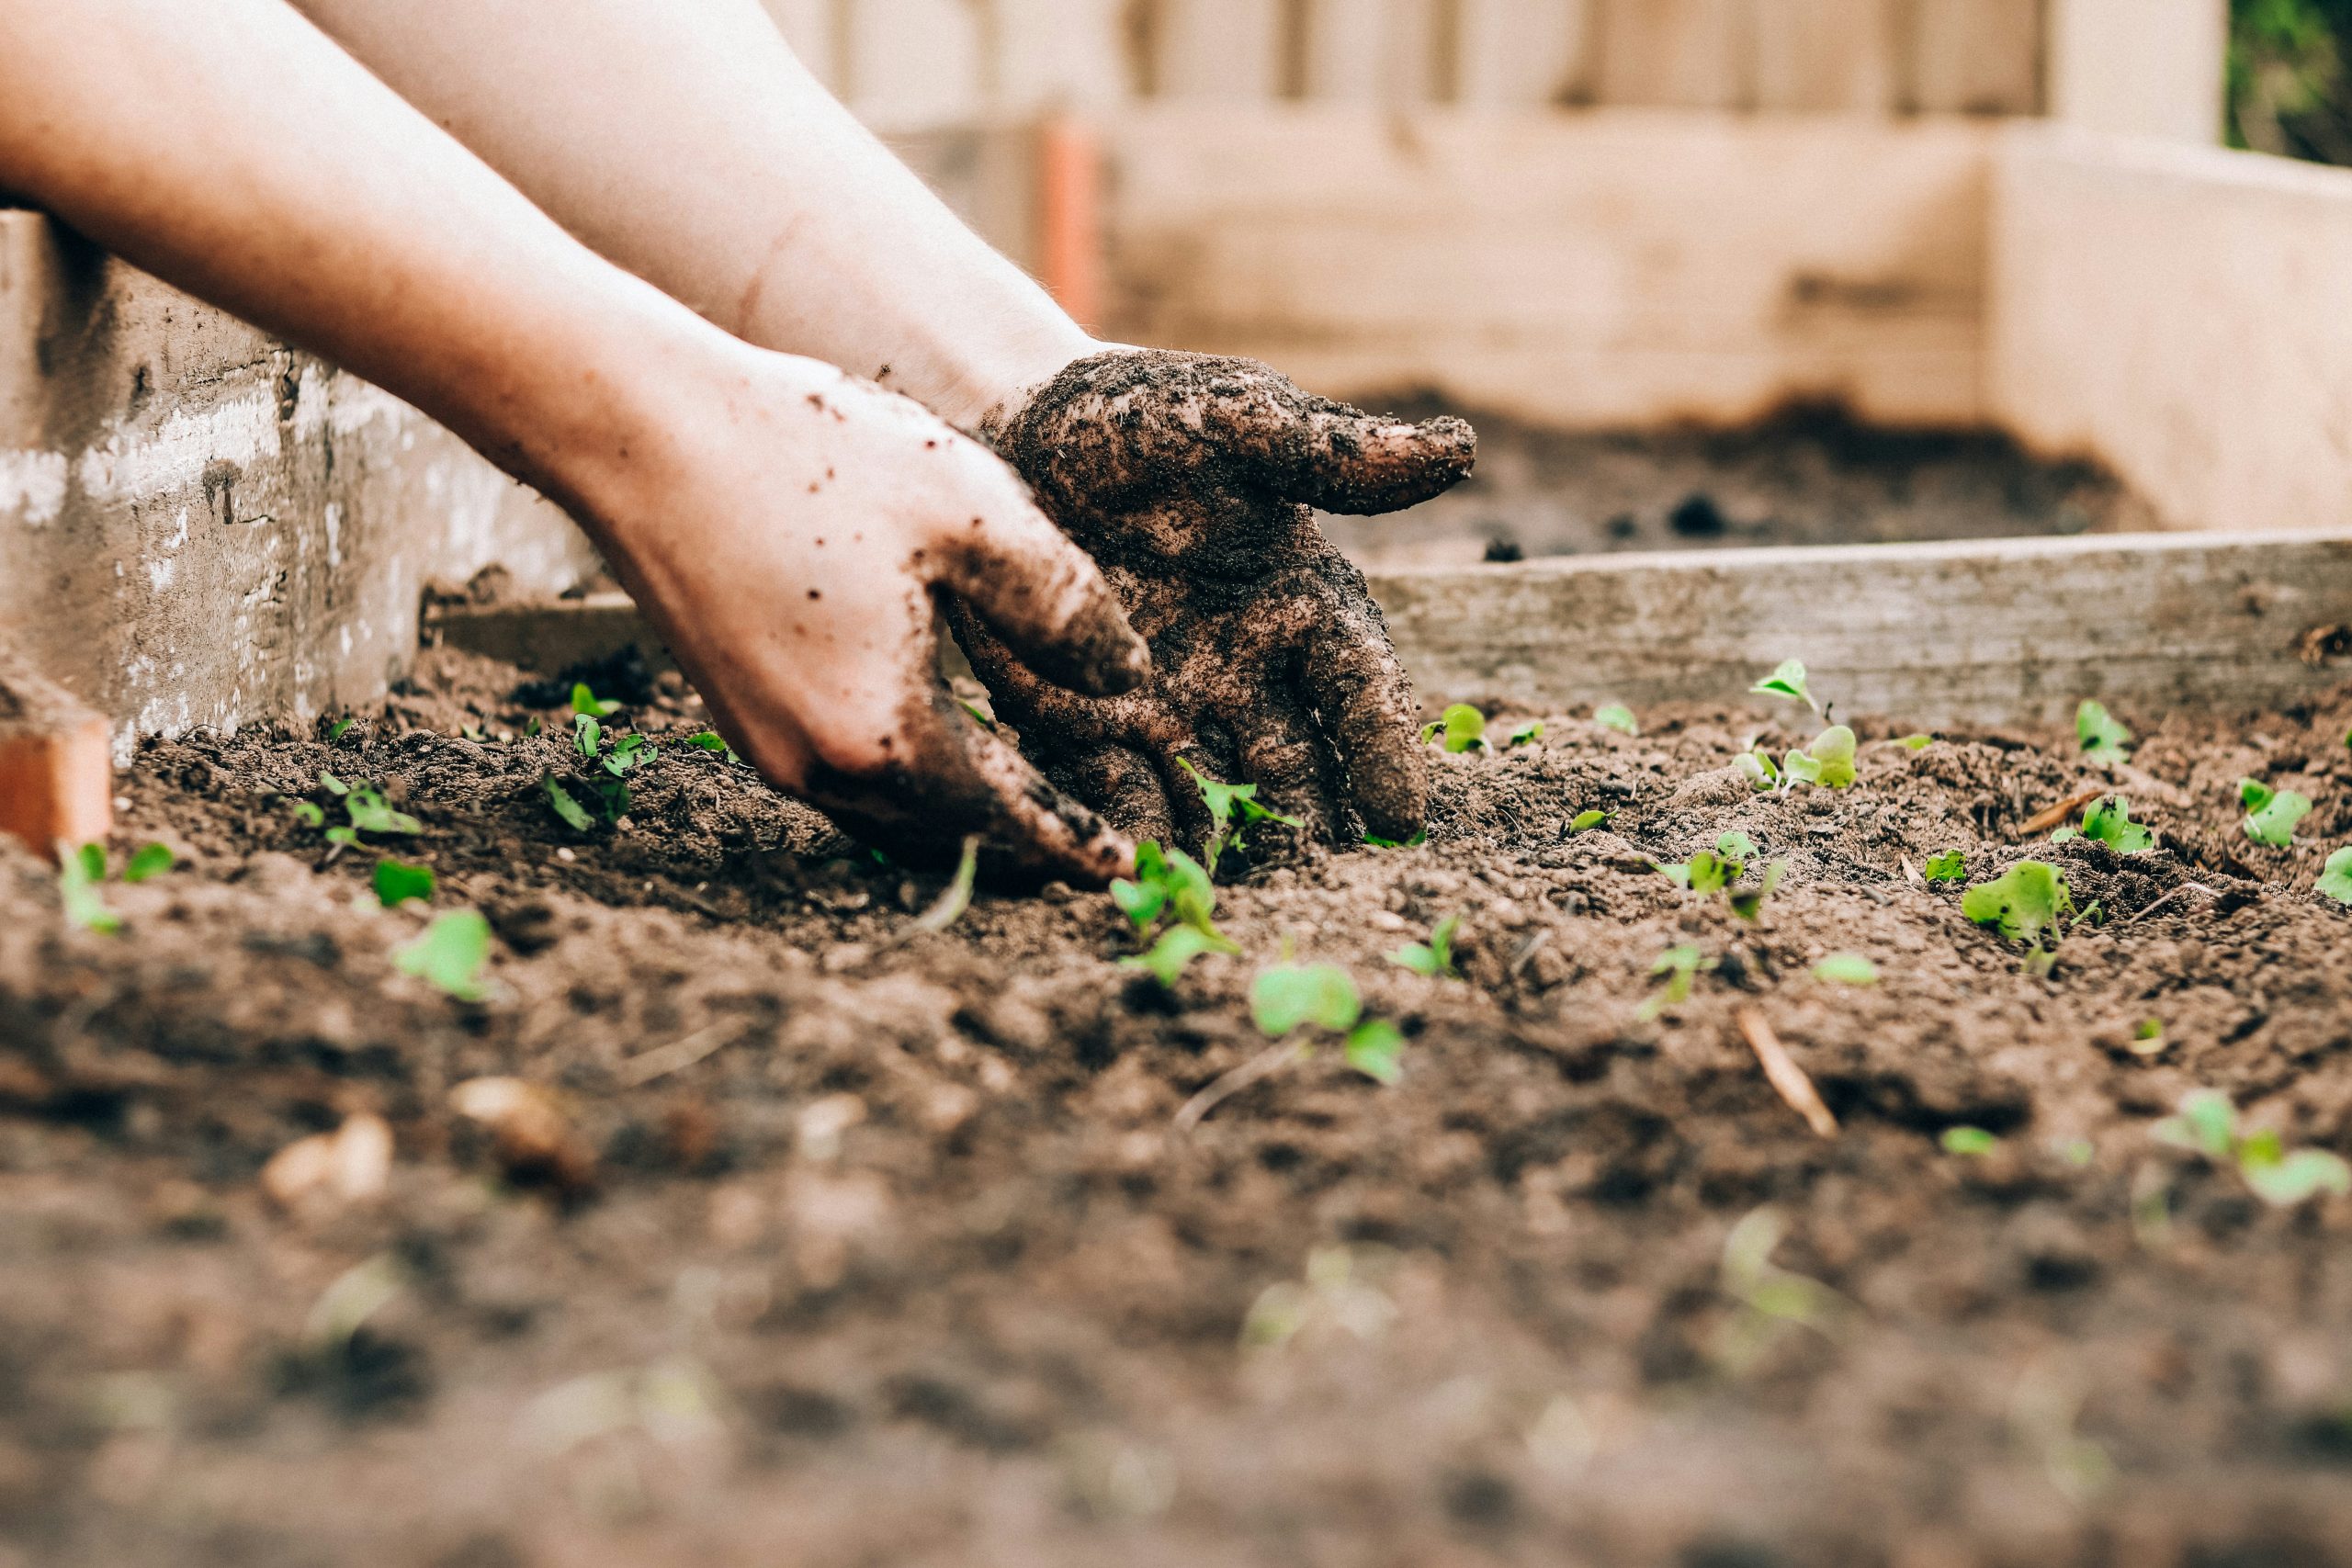 hands gardening in dirt